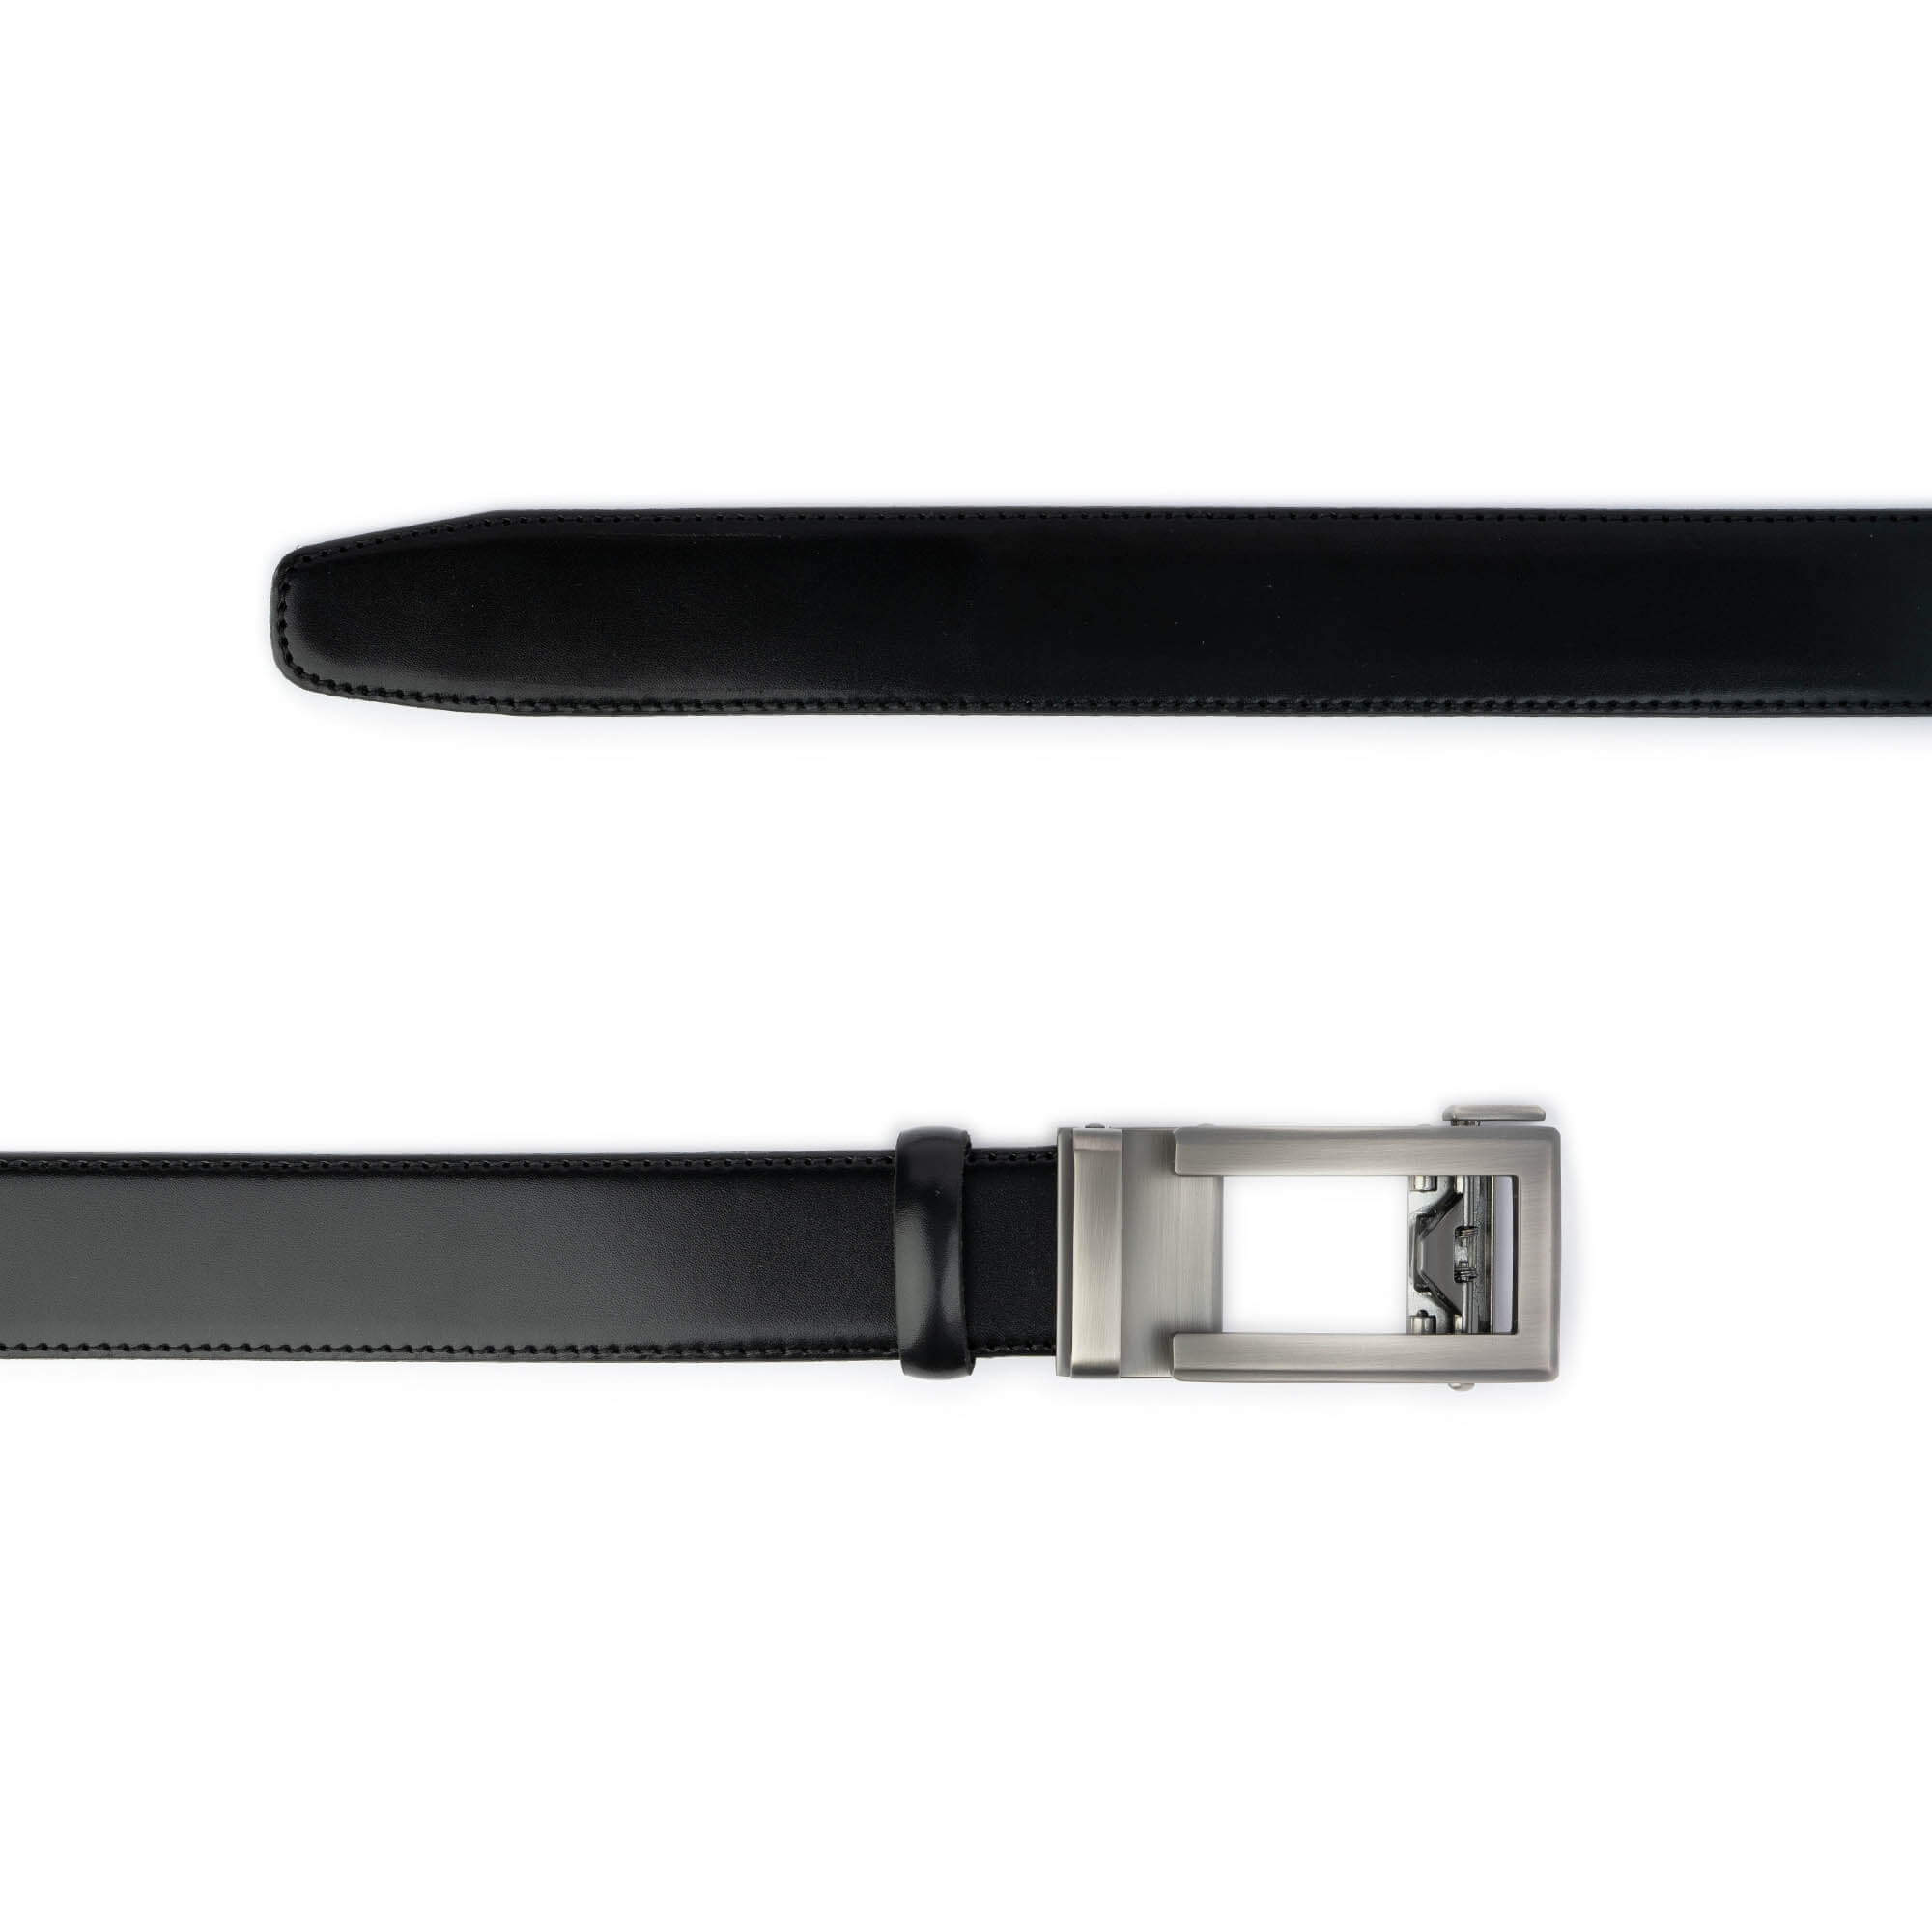 Buy Mens Black Leather Belt With Slide Buckle - LeatherBeltsOnline.com